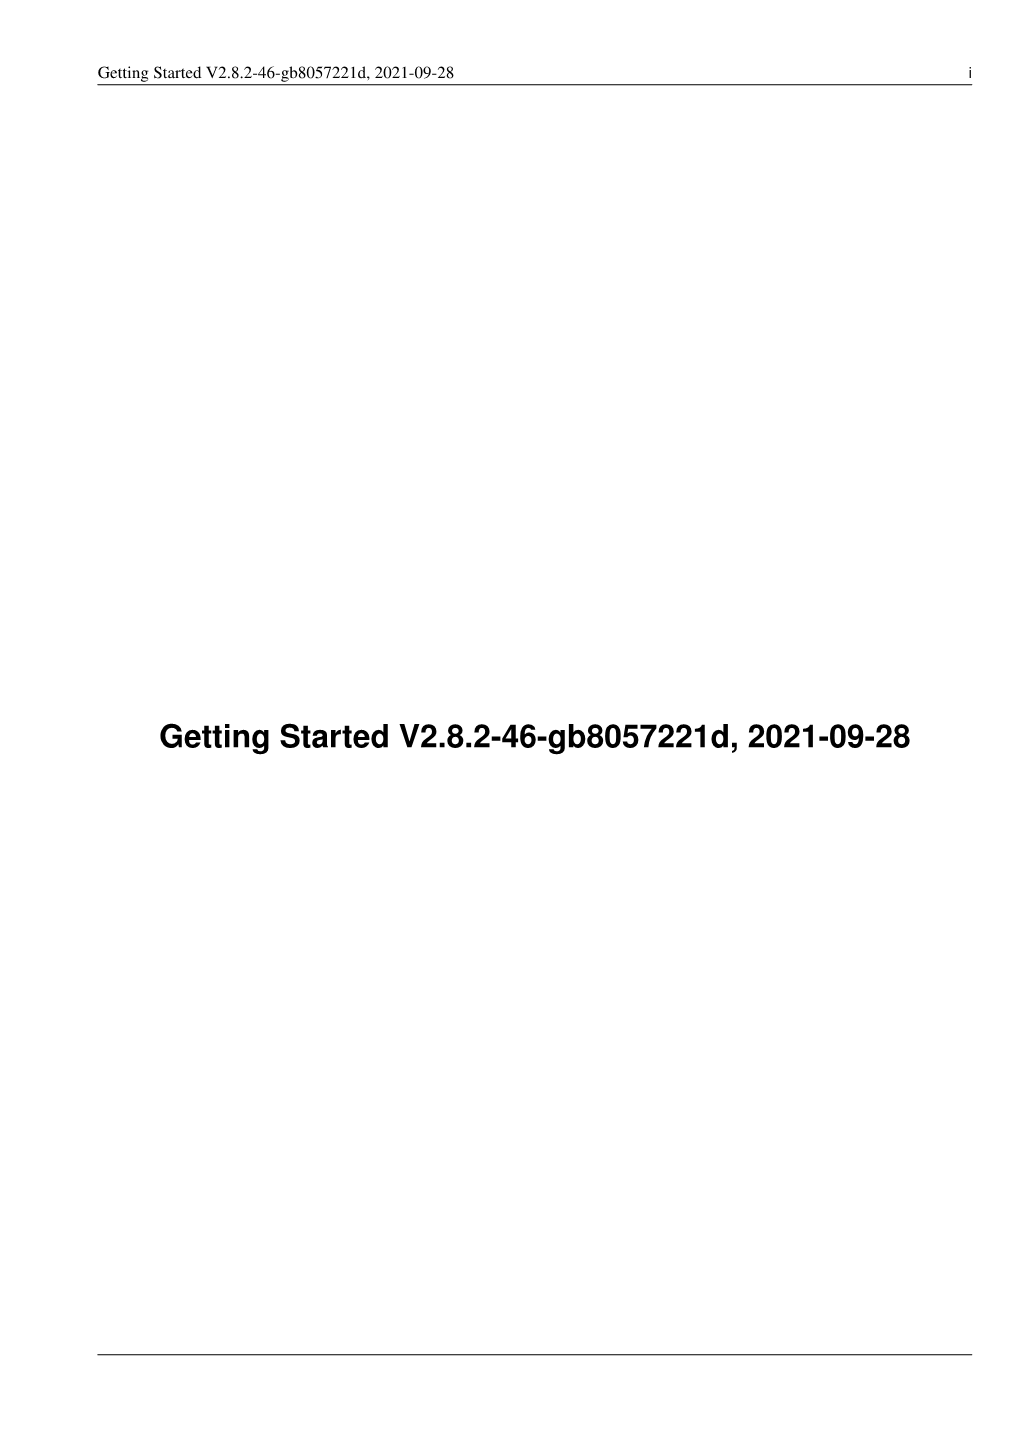 Getting Started V2.8.2-35-G9dd756503, 2021-09-03